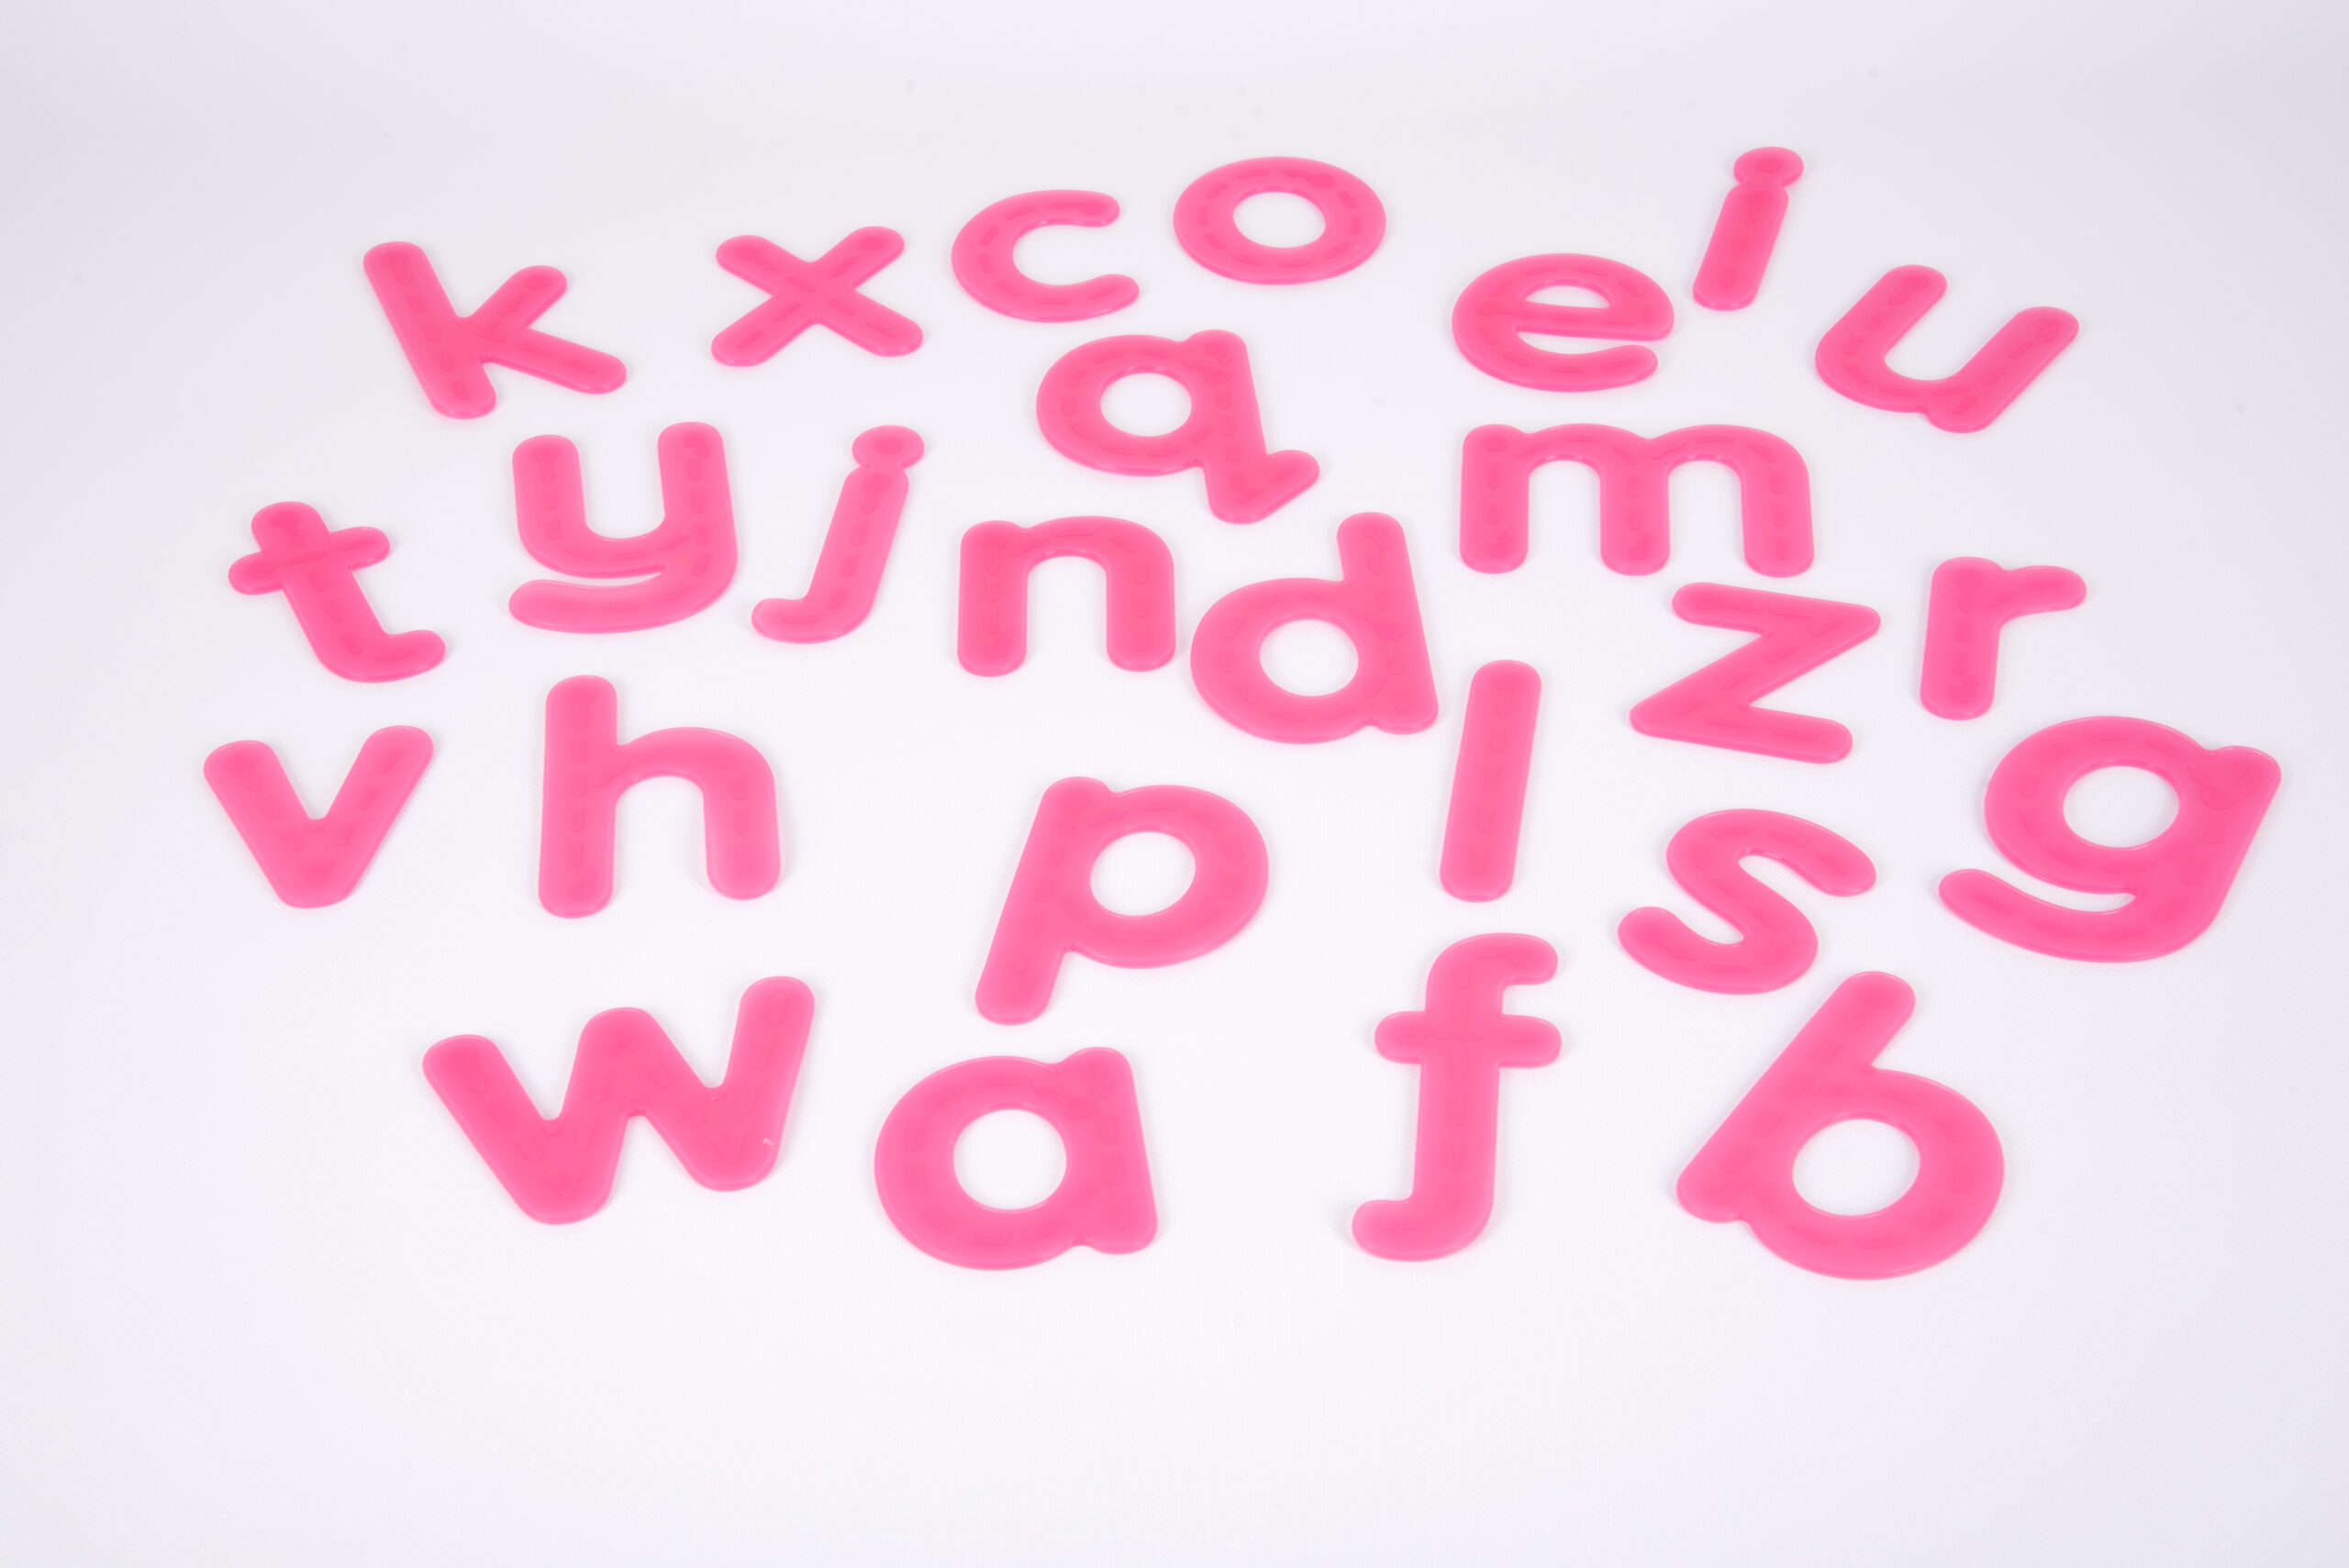 Letras de silicona traslúcidas con flechas en relieve de trazado. Ukitu juguetes